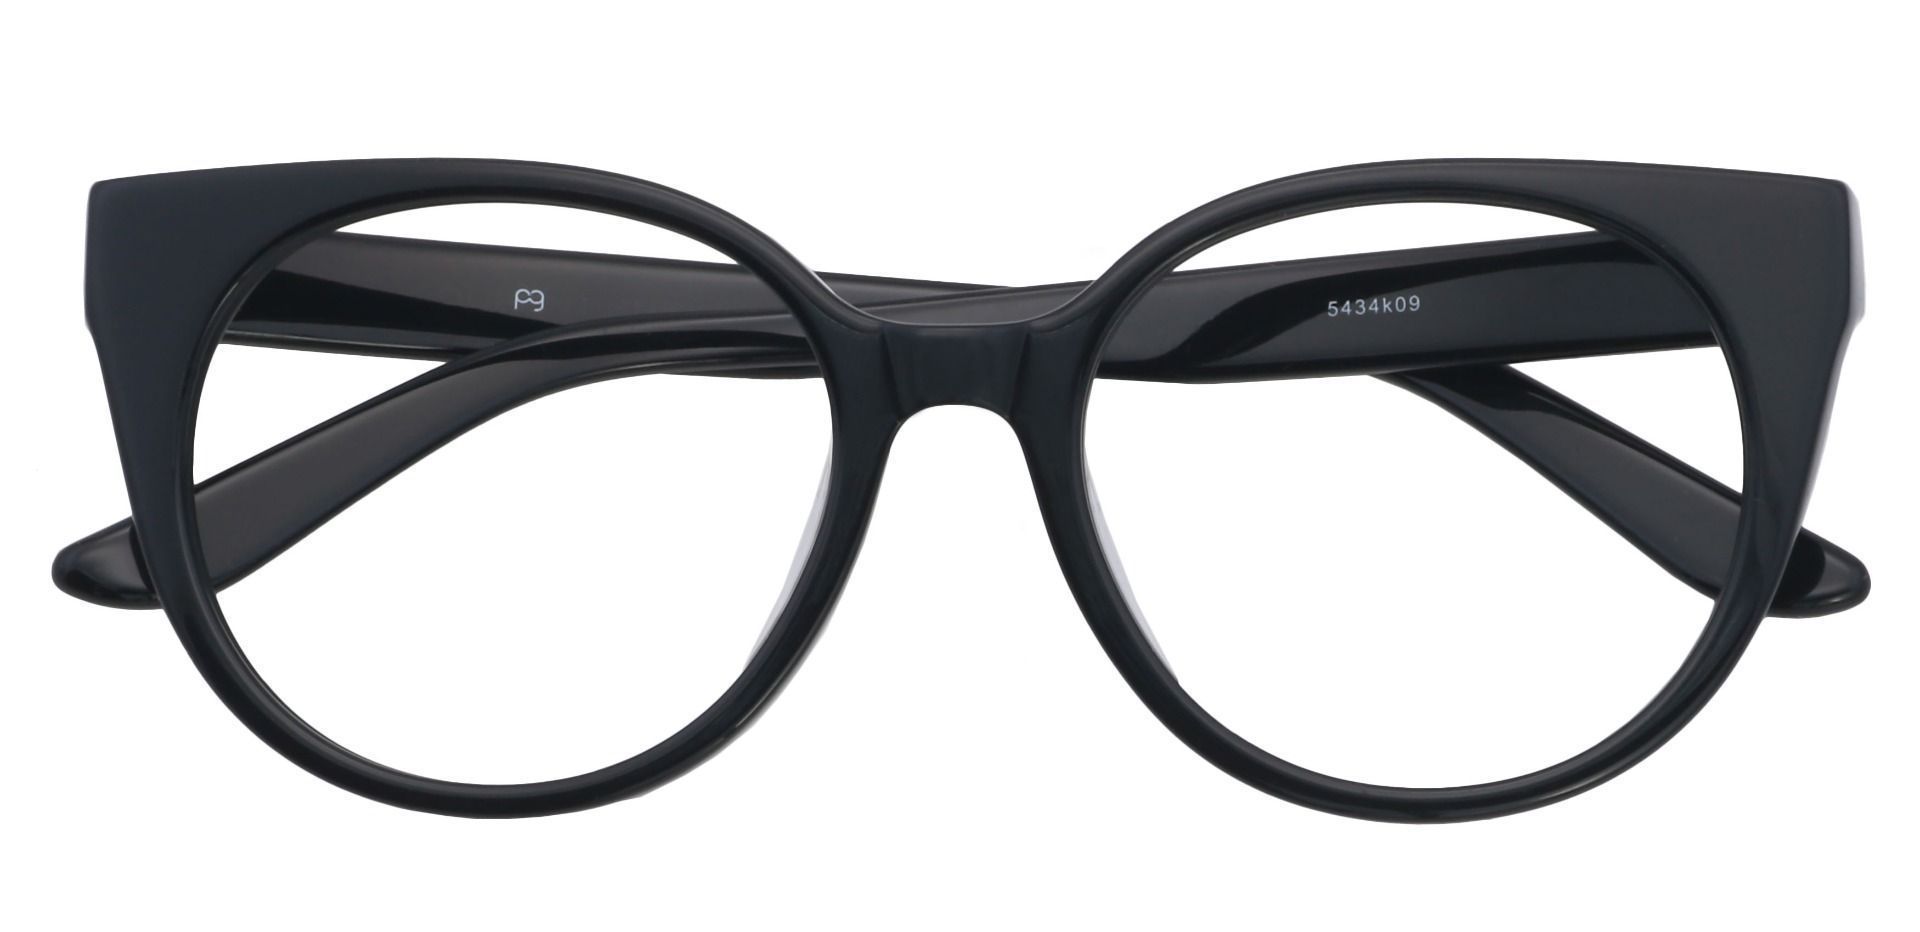 Balmoral Cat-Eye Progressive Glasses - Black